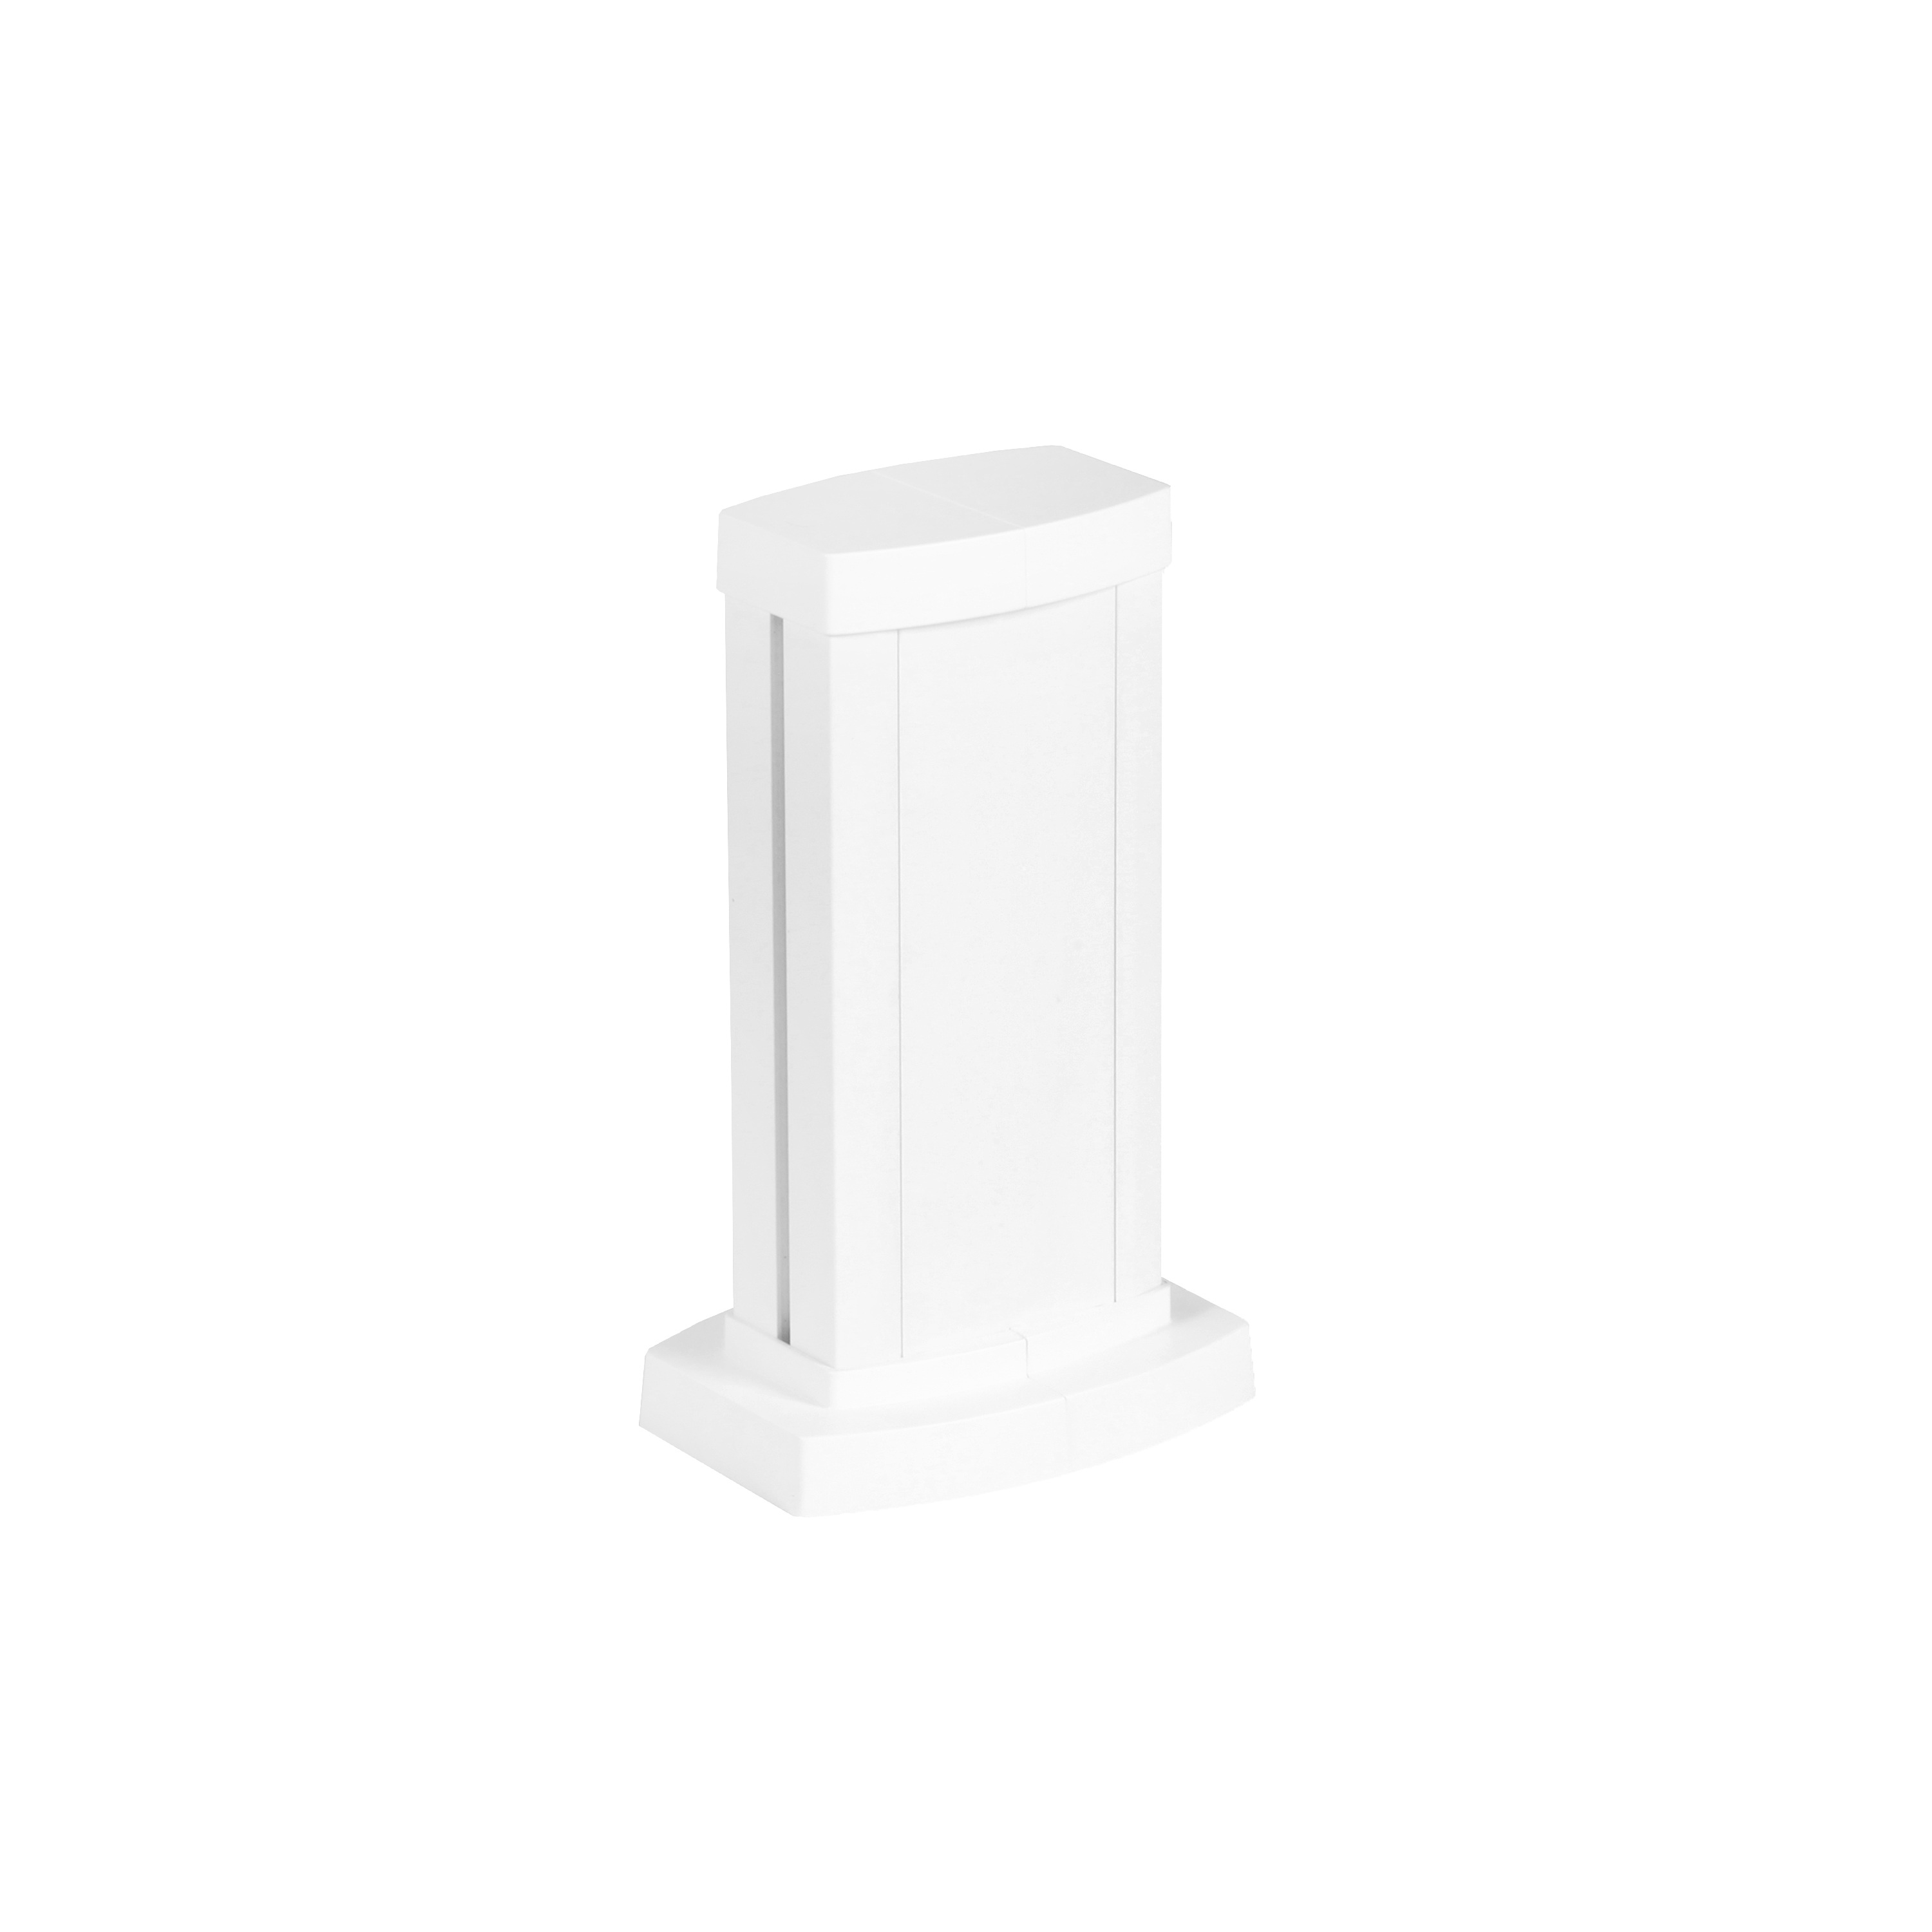 Legrand Универсальная мини-колонна алюминиевая с крышкой из алюминия 1 секция, высота 0,3 метра, цвет белый